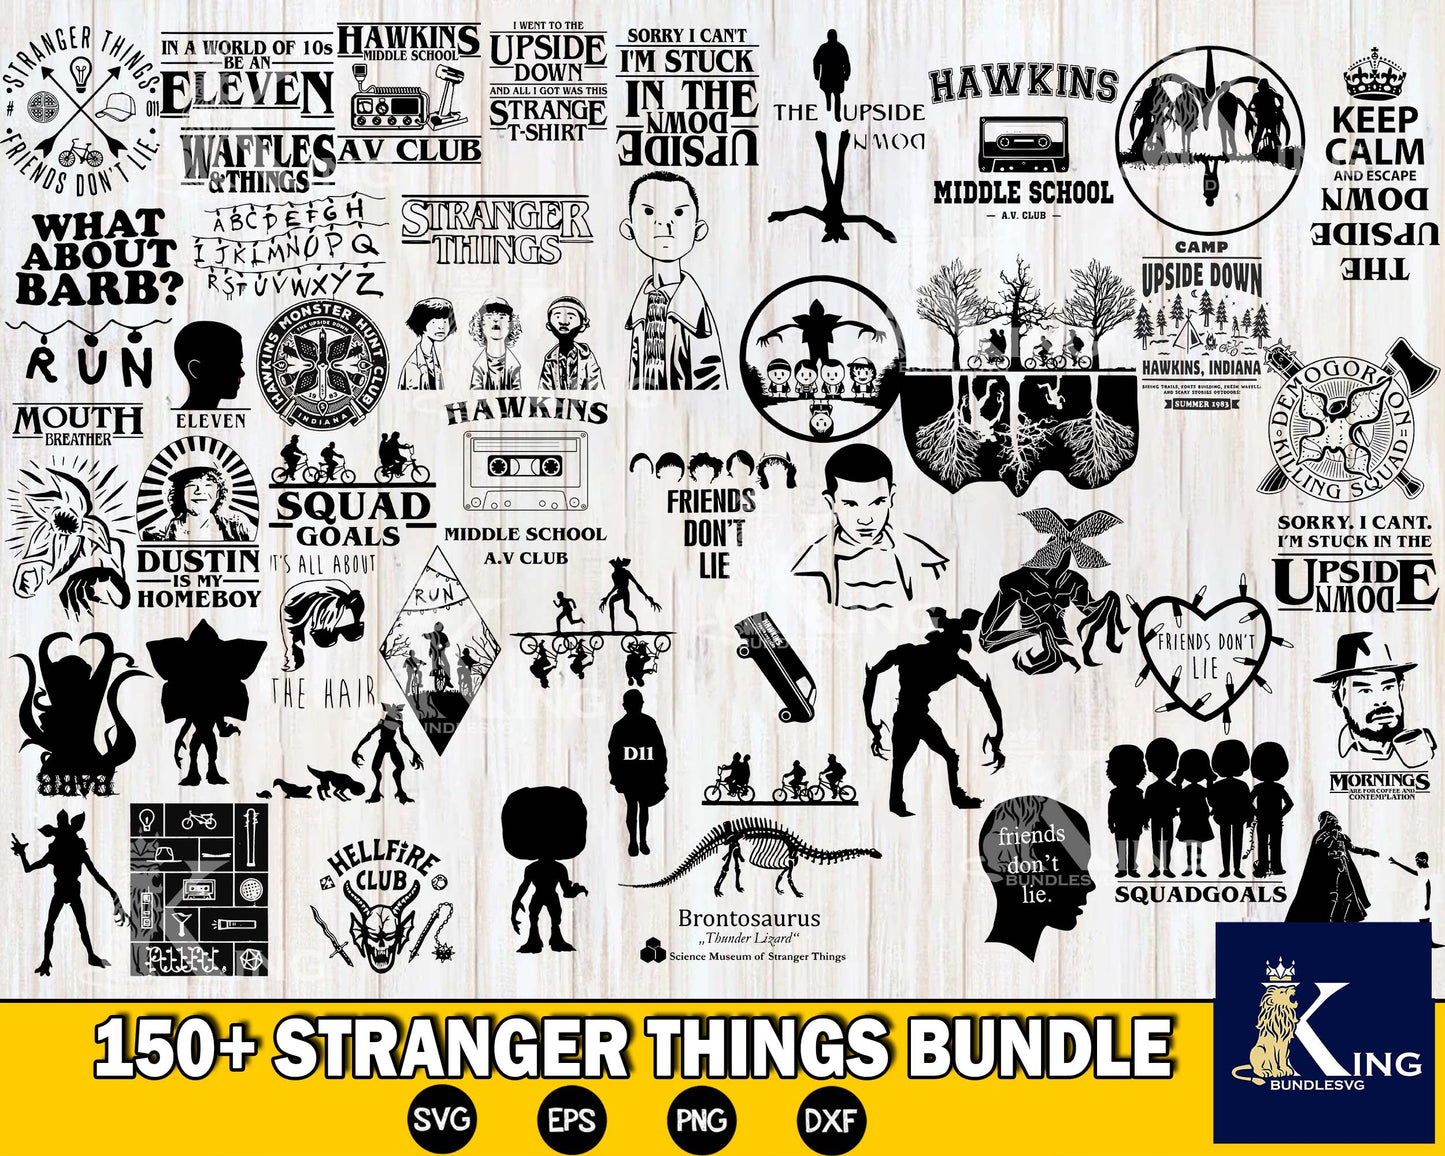 Stranger things bundle svg ,Bundle Hellfire Club svg ,999+ file  Mega Bundle Stranger Things svg dxf eps png,cricut , for Cricut, Silhouette, digital, file cut